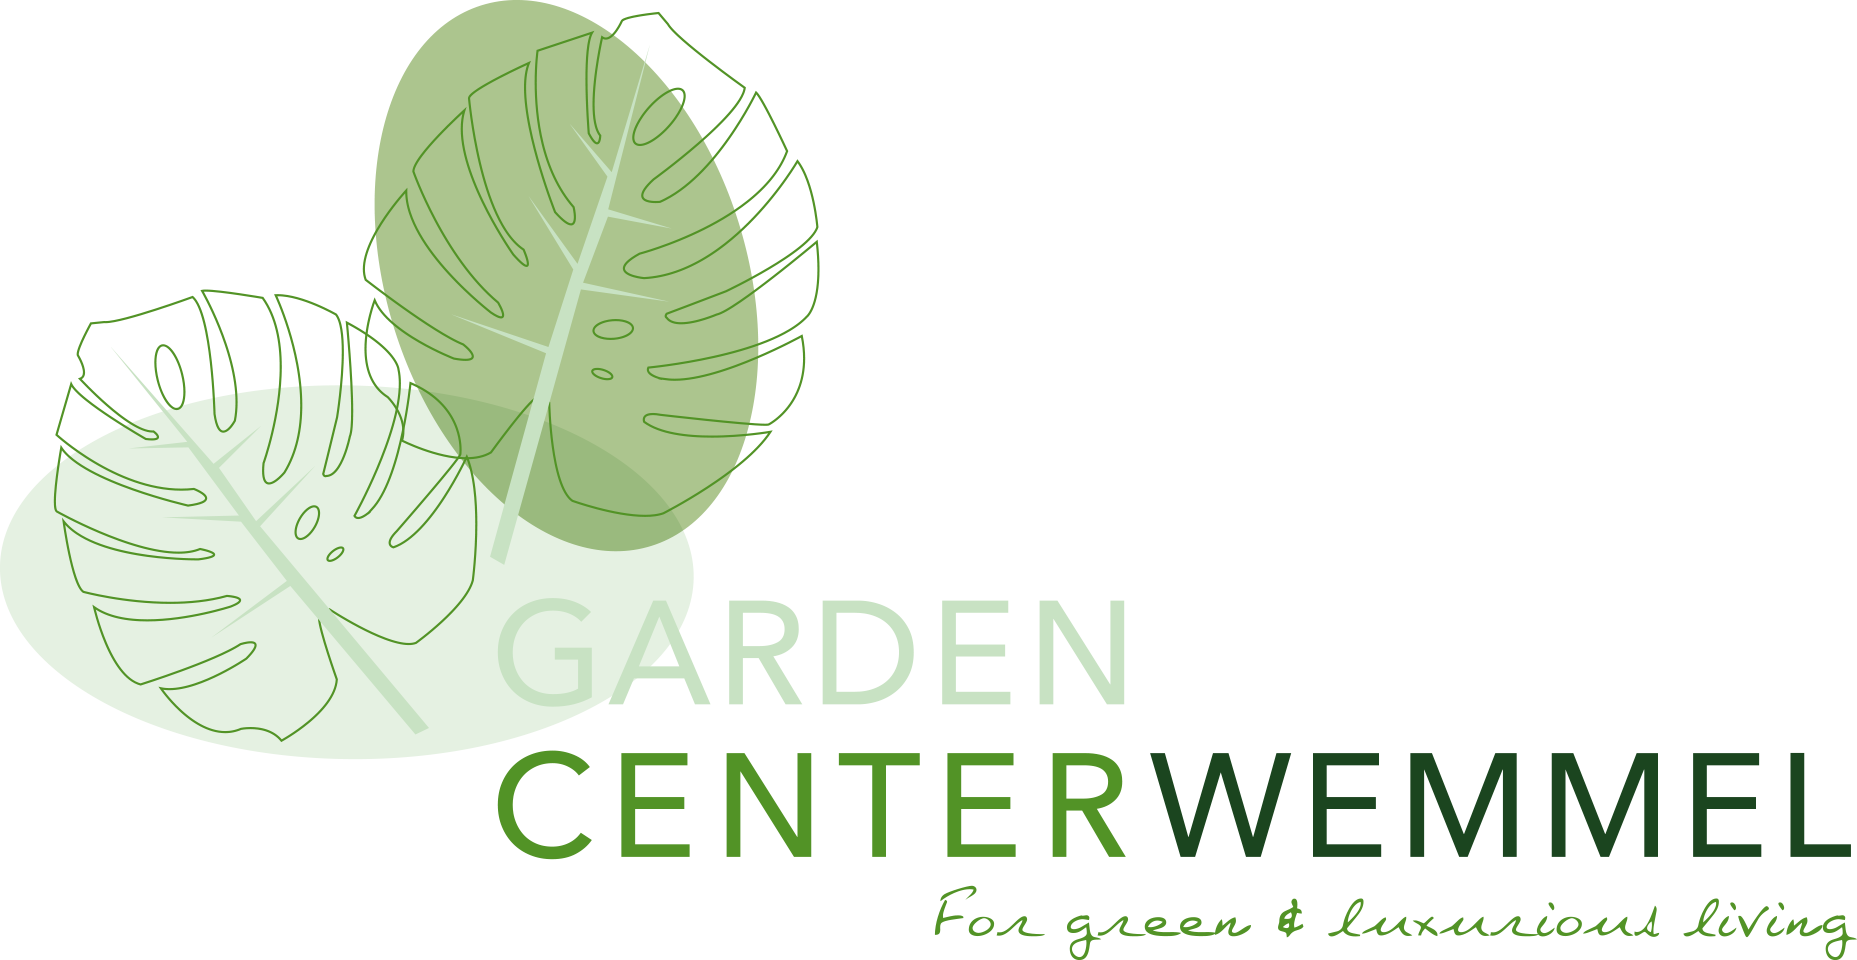 Garden Center Wemmel BV